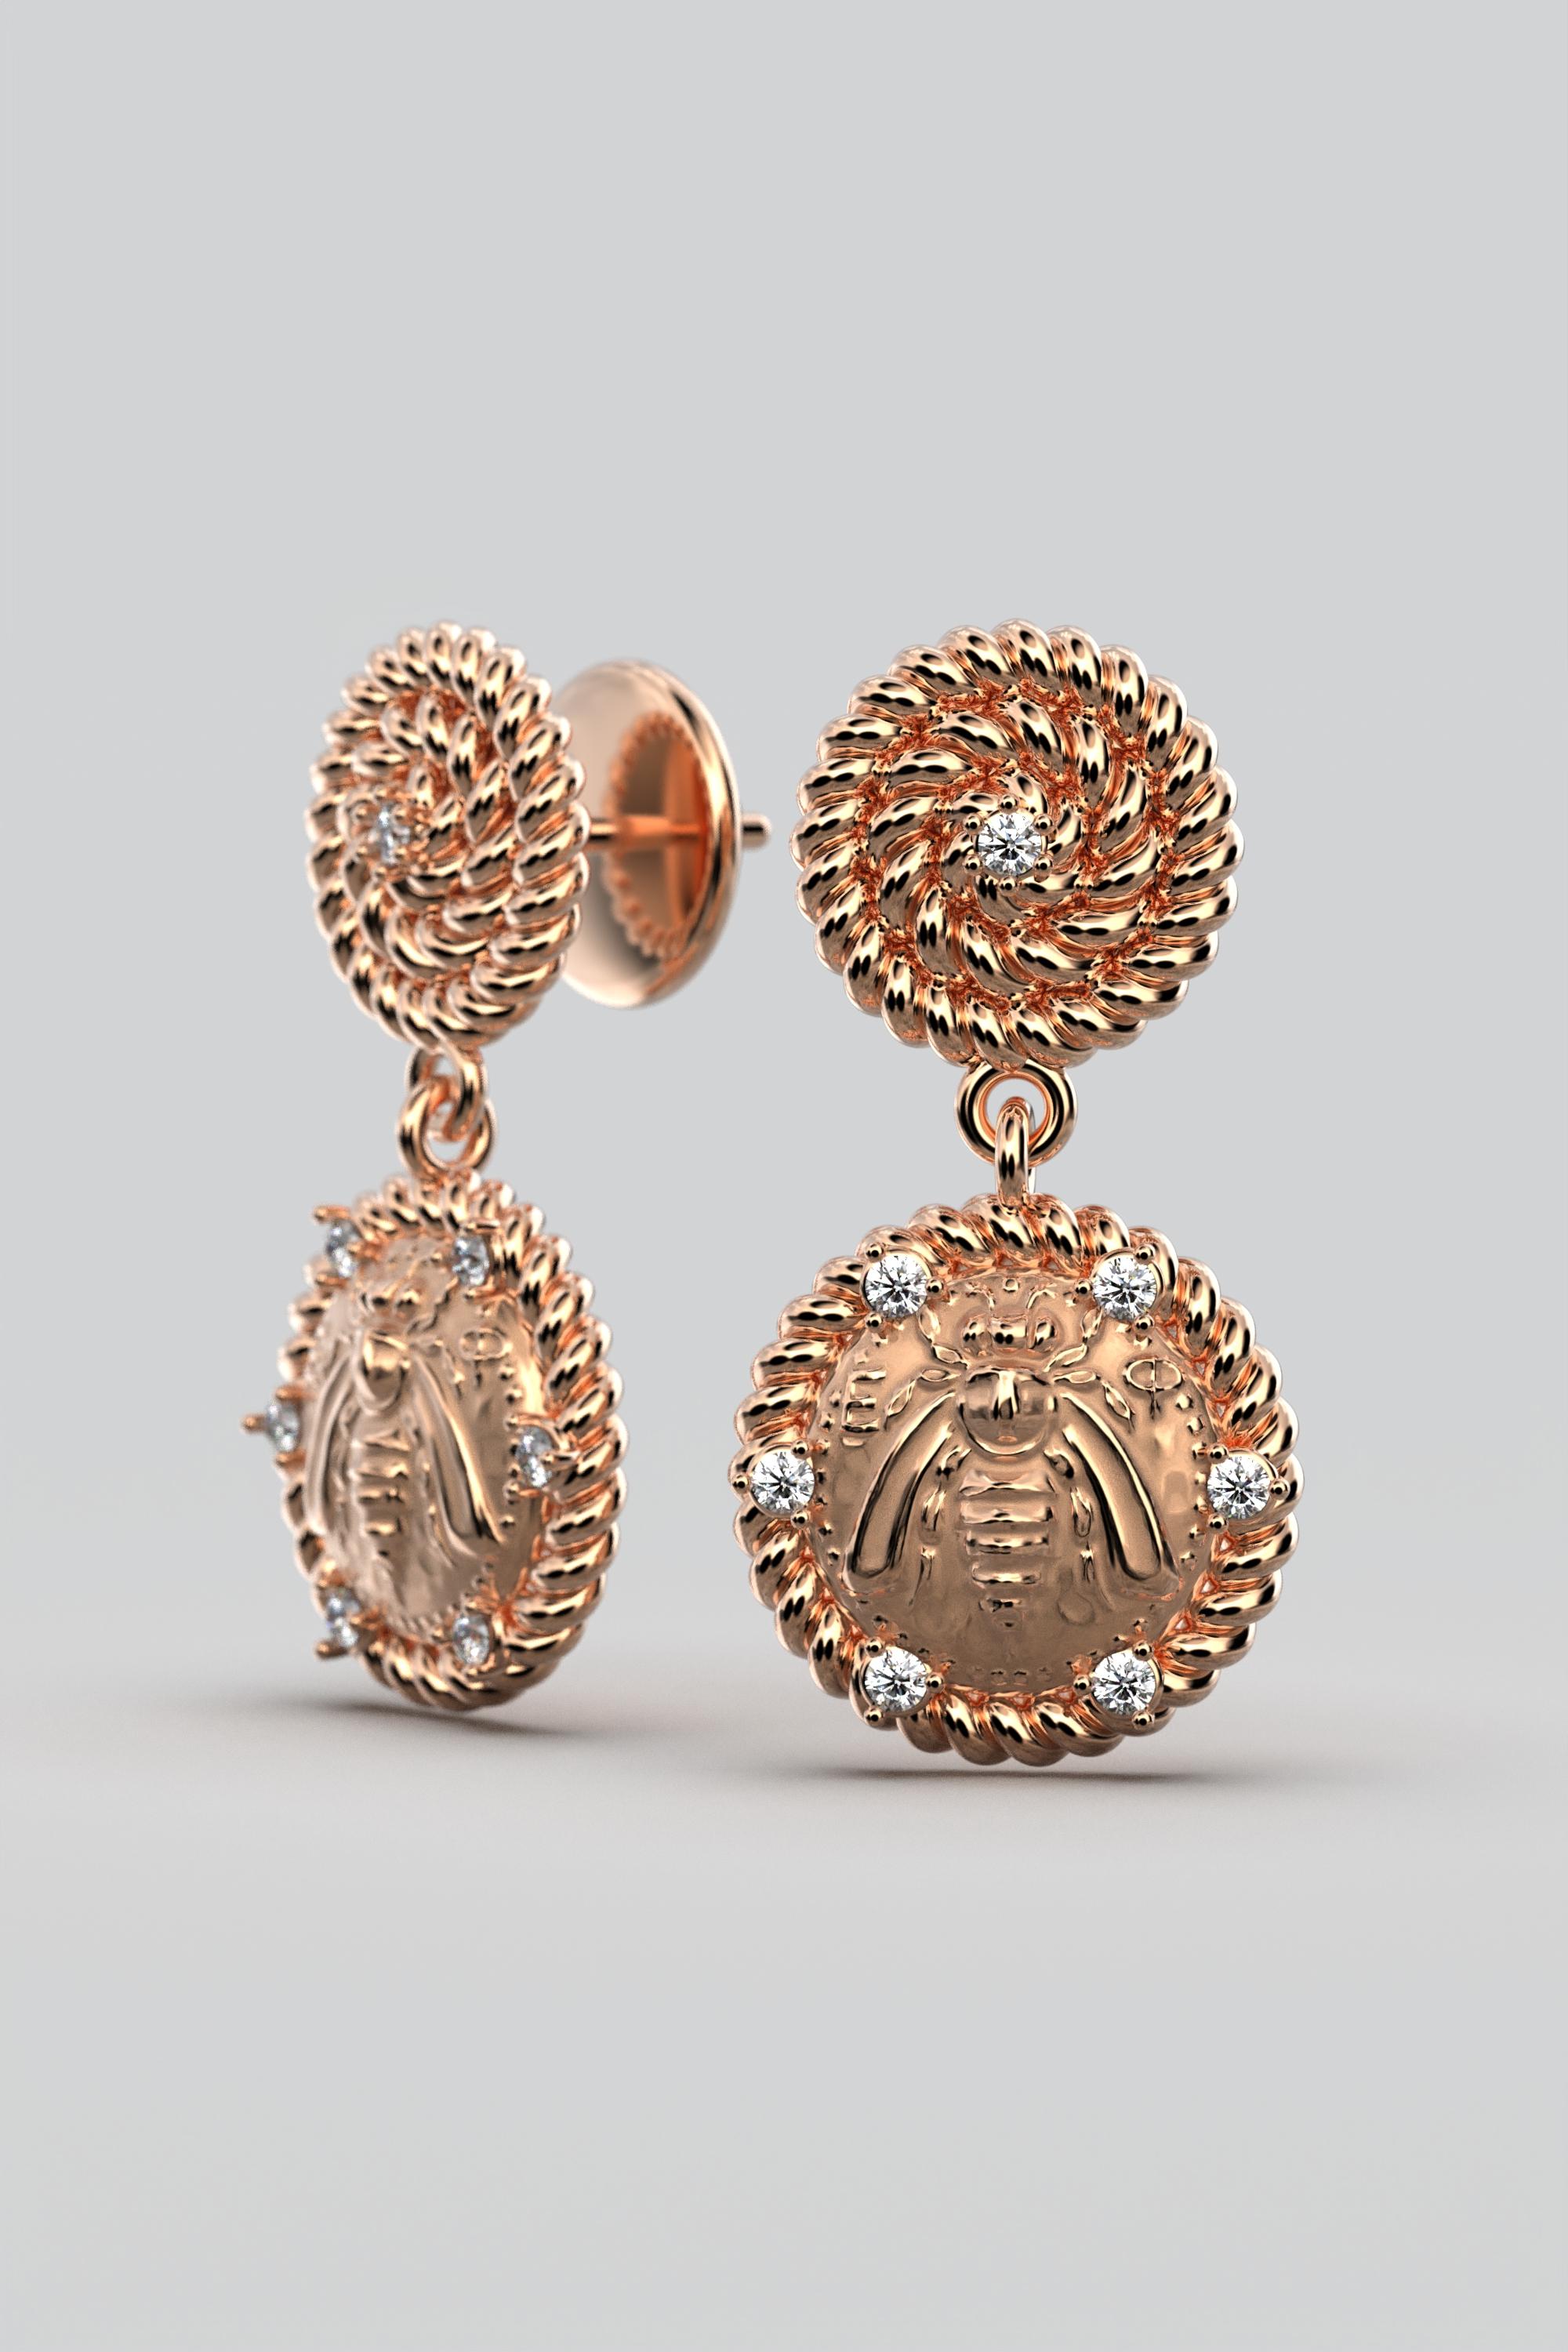 Italian Jewelry | 18k Gold Dangle Earrings With Diamonds | Bee Earrings  For Sale 3